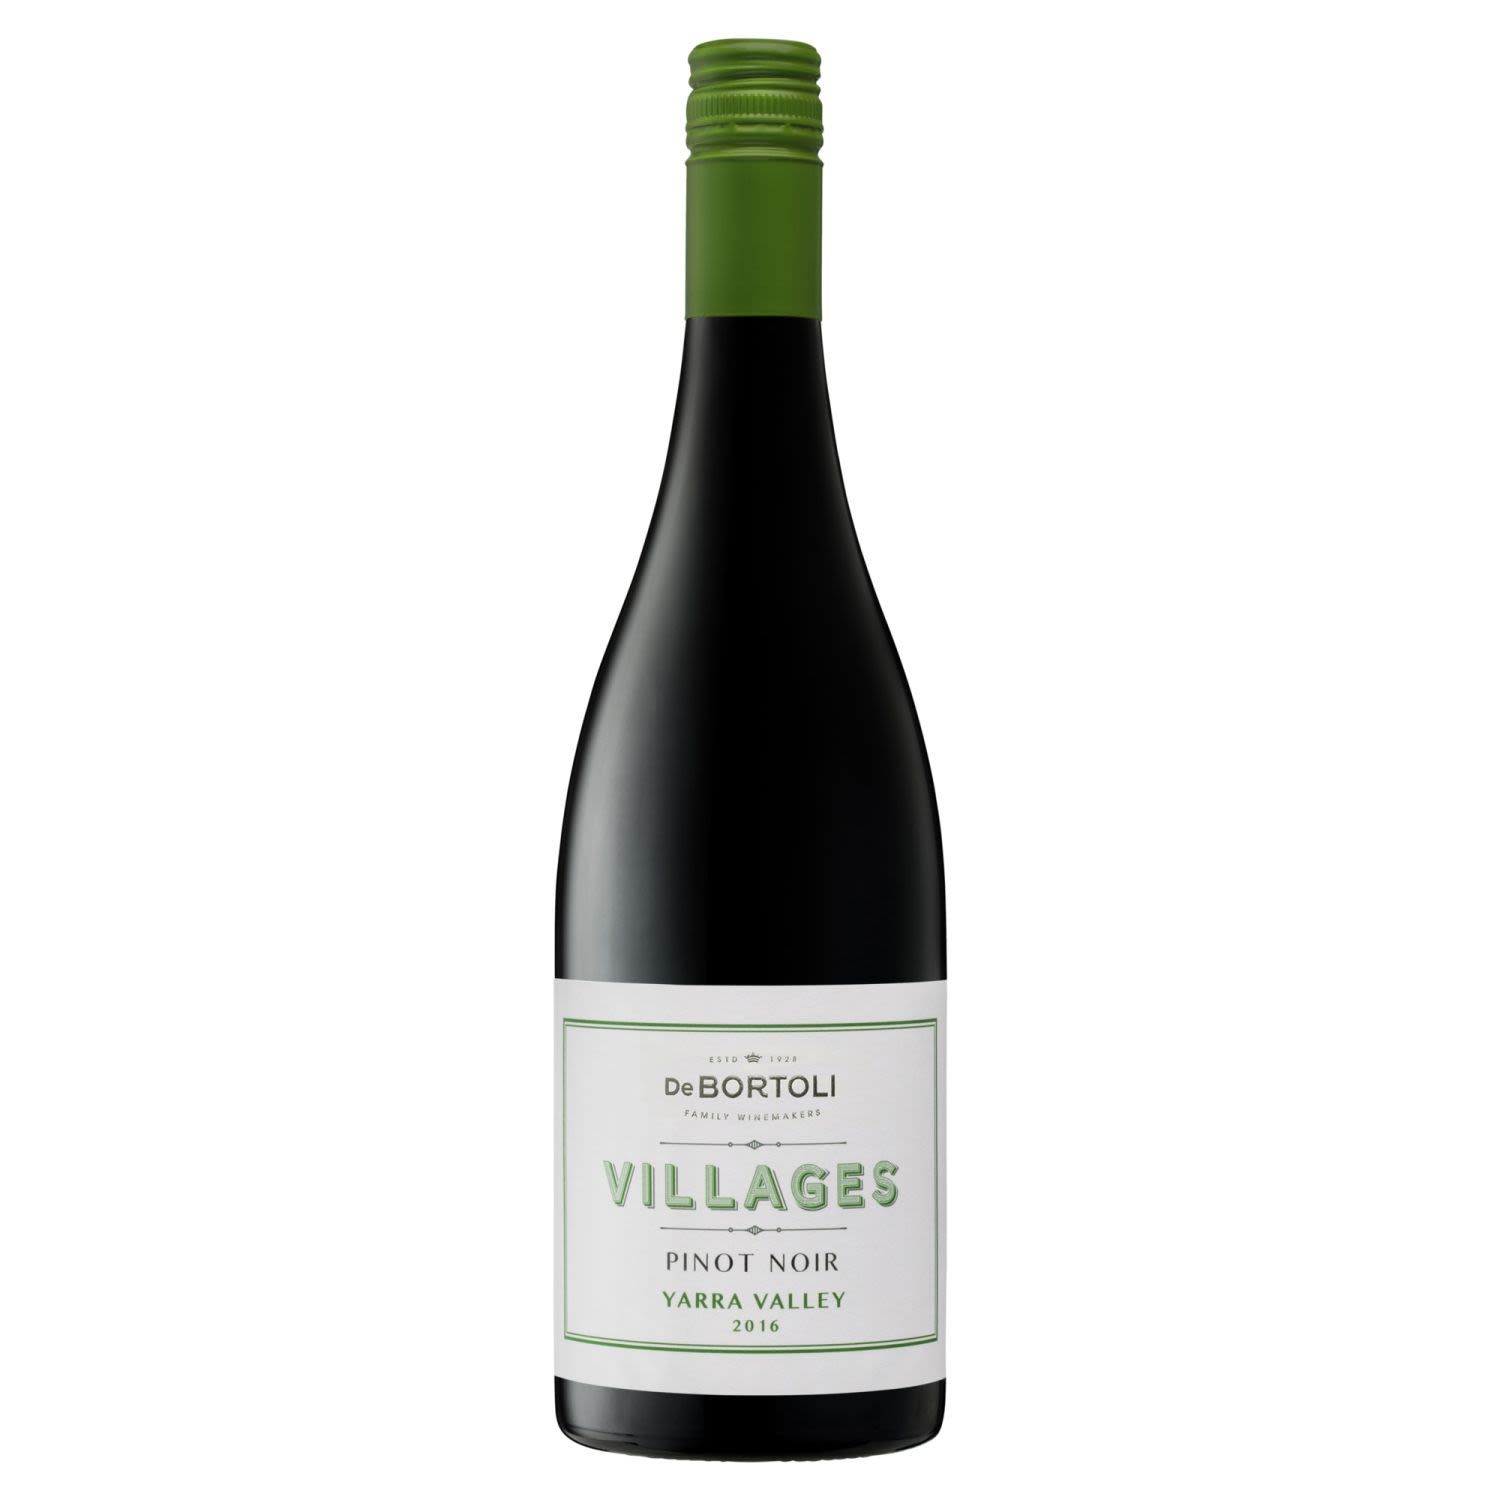 De Bortoli Villages Yarra Valley Pinot Noir<br /> <br />Alcohol Volume: 13.50%<br /><br />Pack Format: Bottle<br /><br />Standard Drinks: 8</br /><br />Pack Type: Bottle<br /><br />Country of Origin: Australia<br /><br />Region: Yarra Valley<br /><br />Vintage: '2016<br />